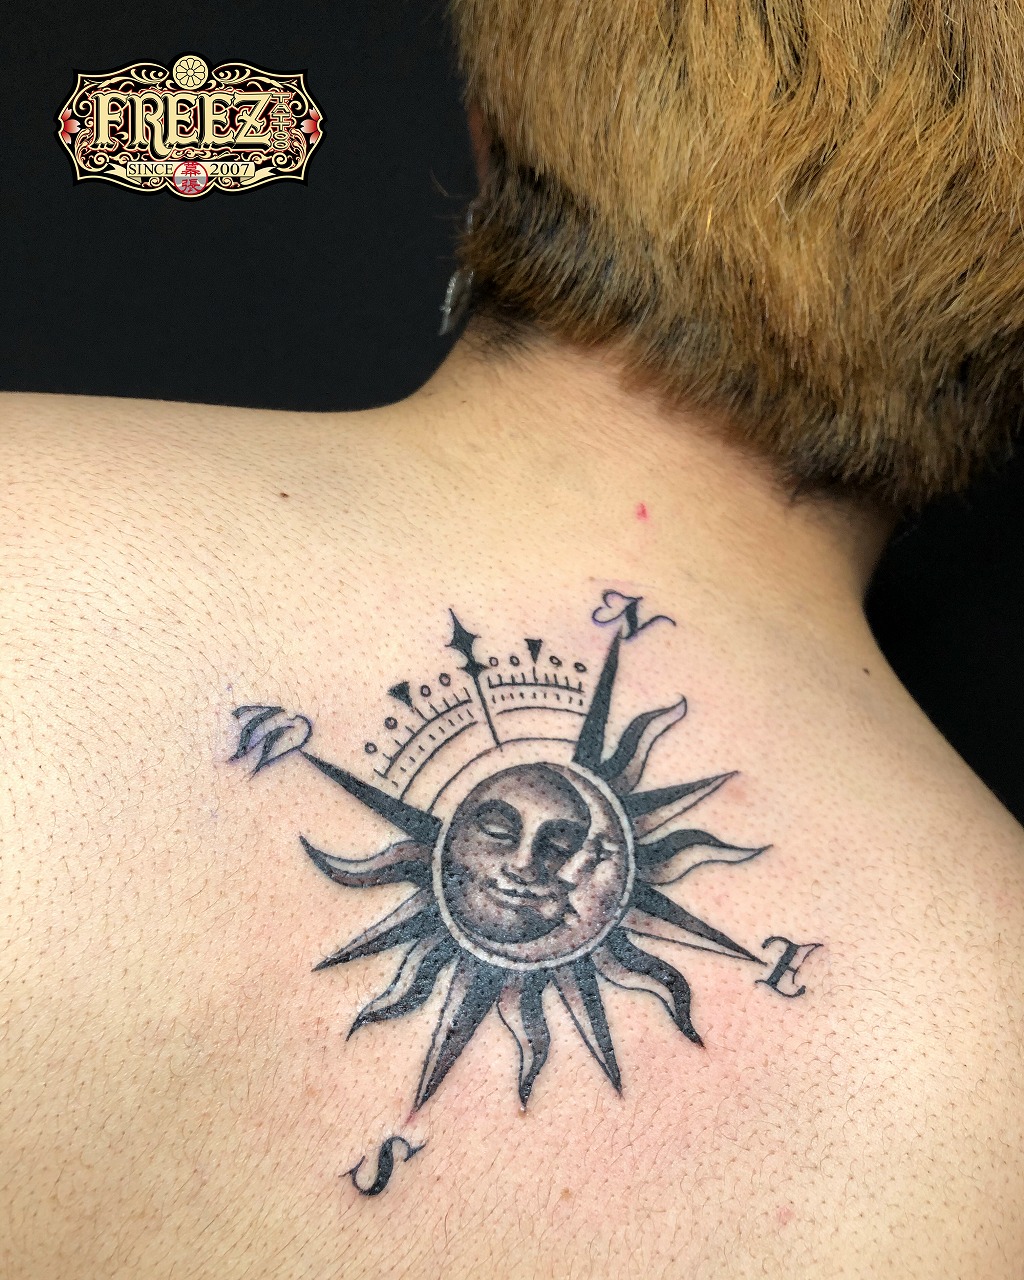 背中に月と太陽のコンパスタトゥーtattoo 千葉幕張刺青irezumi 千葉女性彫師sao 千葉タトゥーは千葉市花見川区幕張本郷のfree Z Tattoo フリーズタトゥー